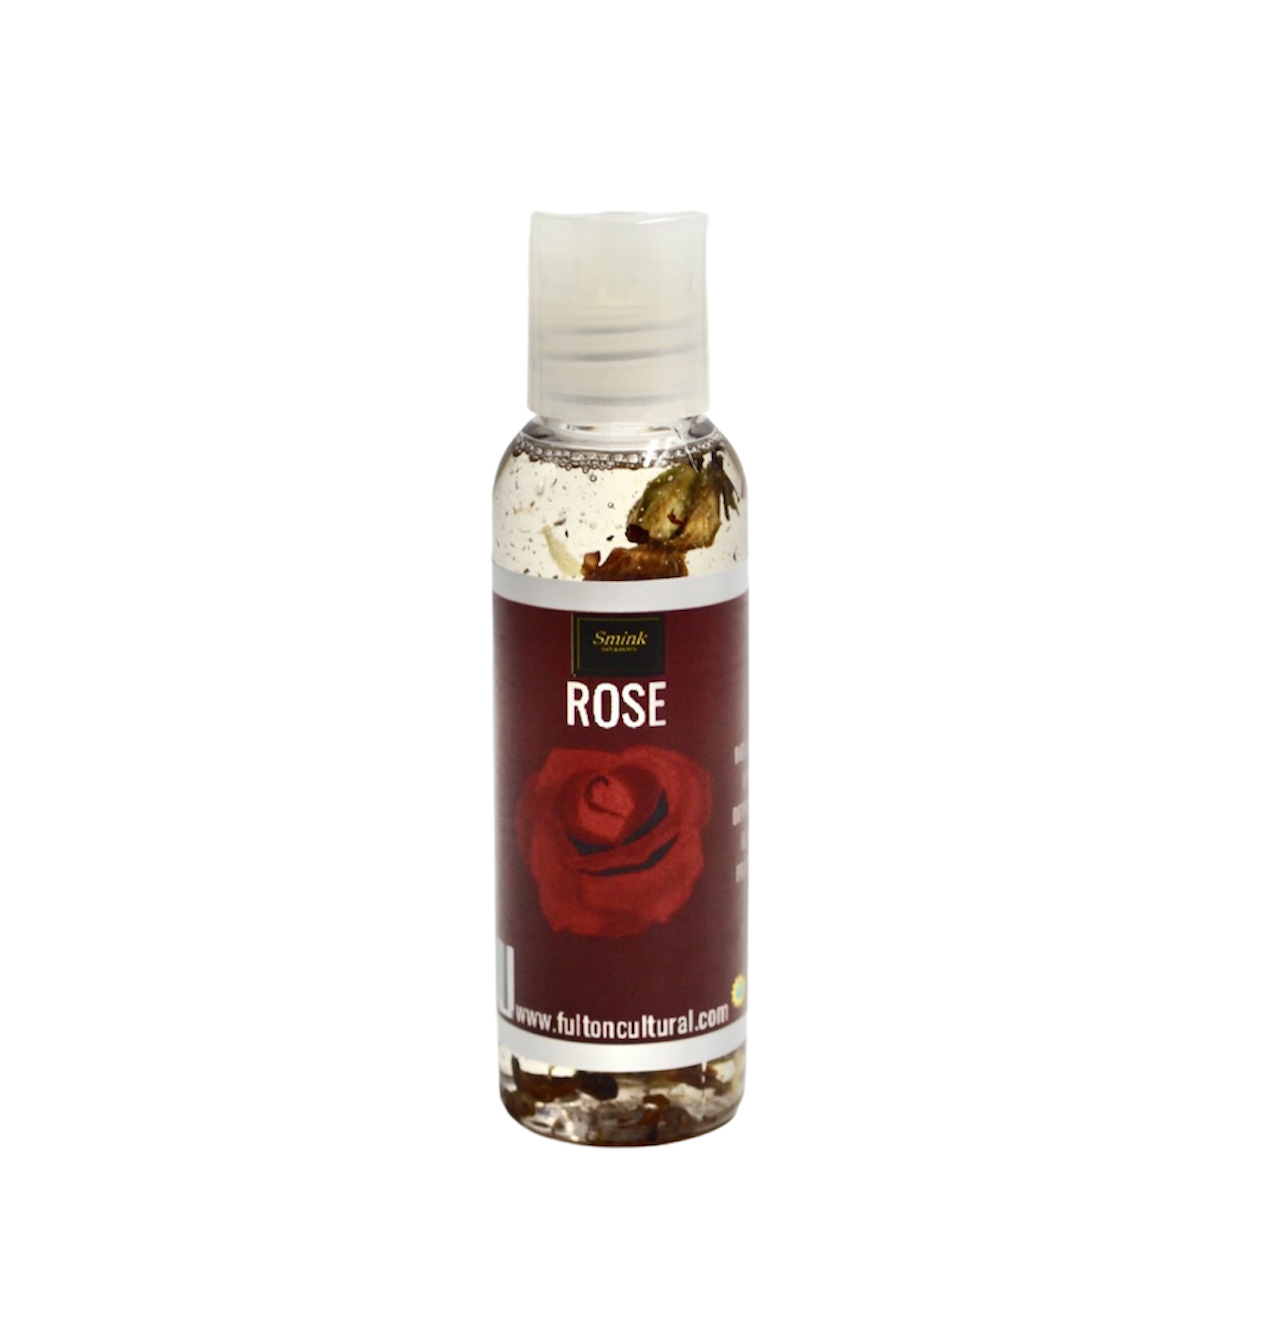 Smink Rose Bud Infused Oil